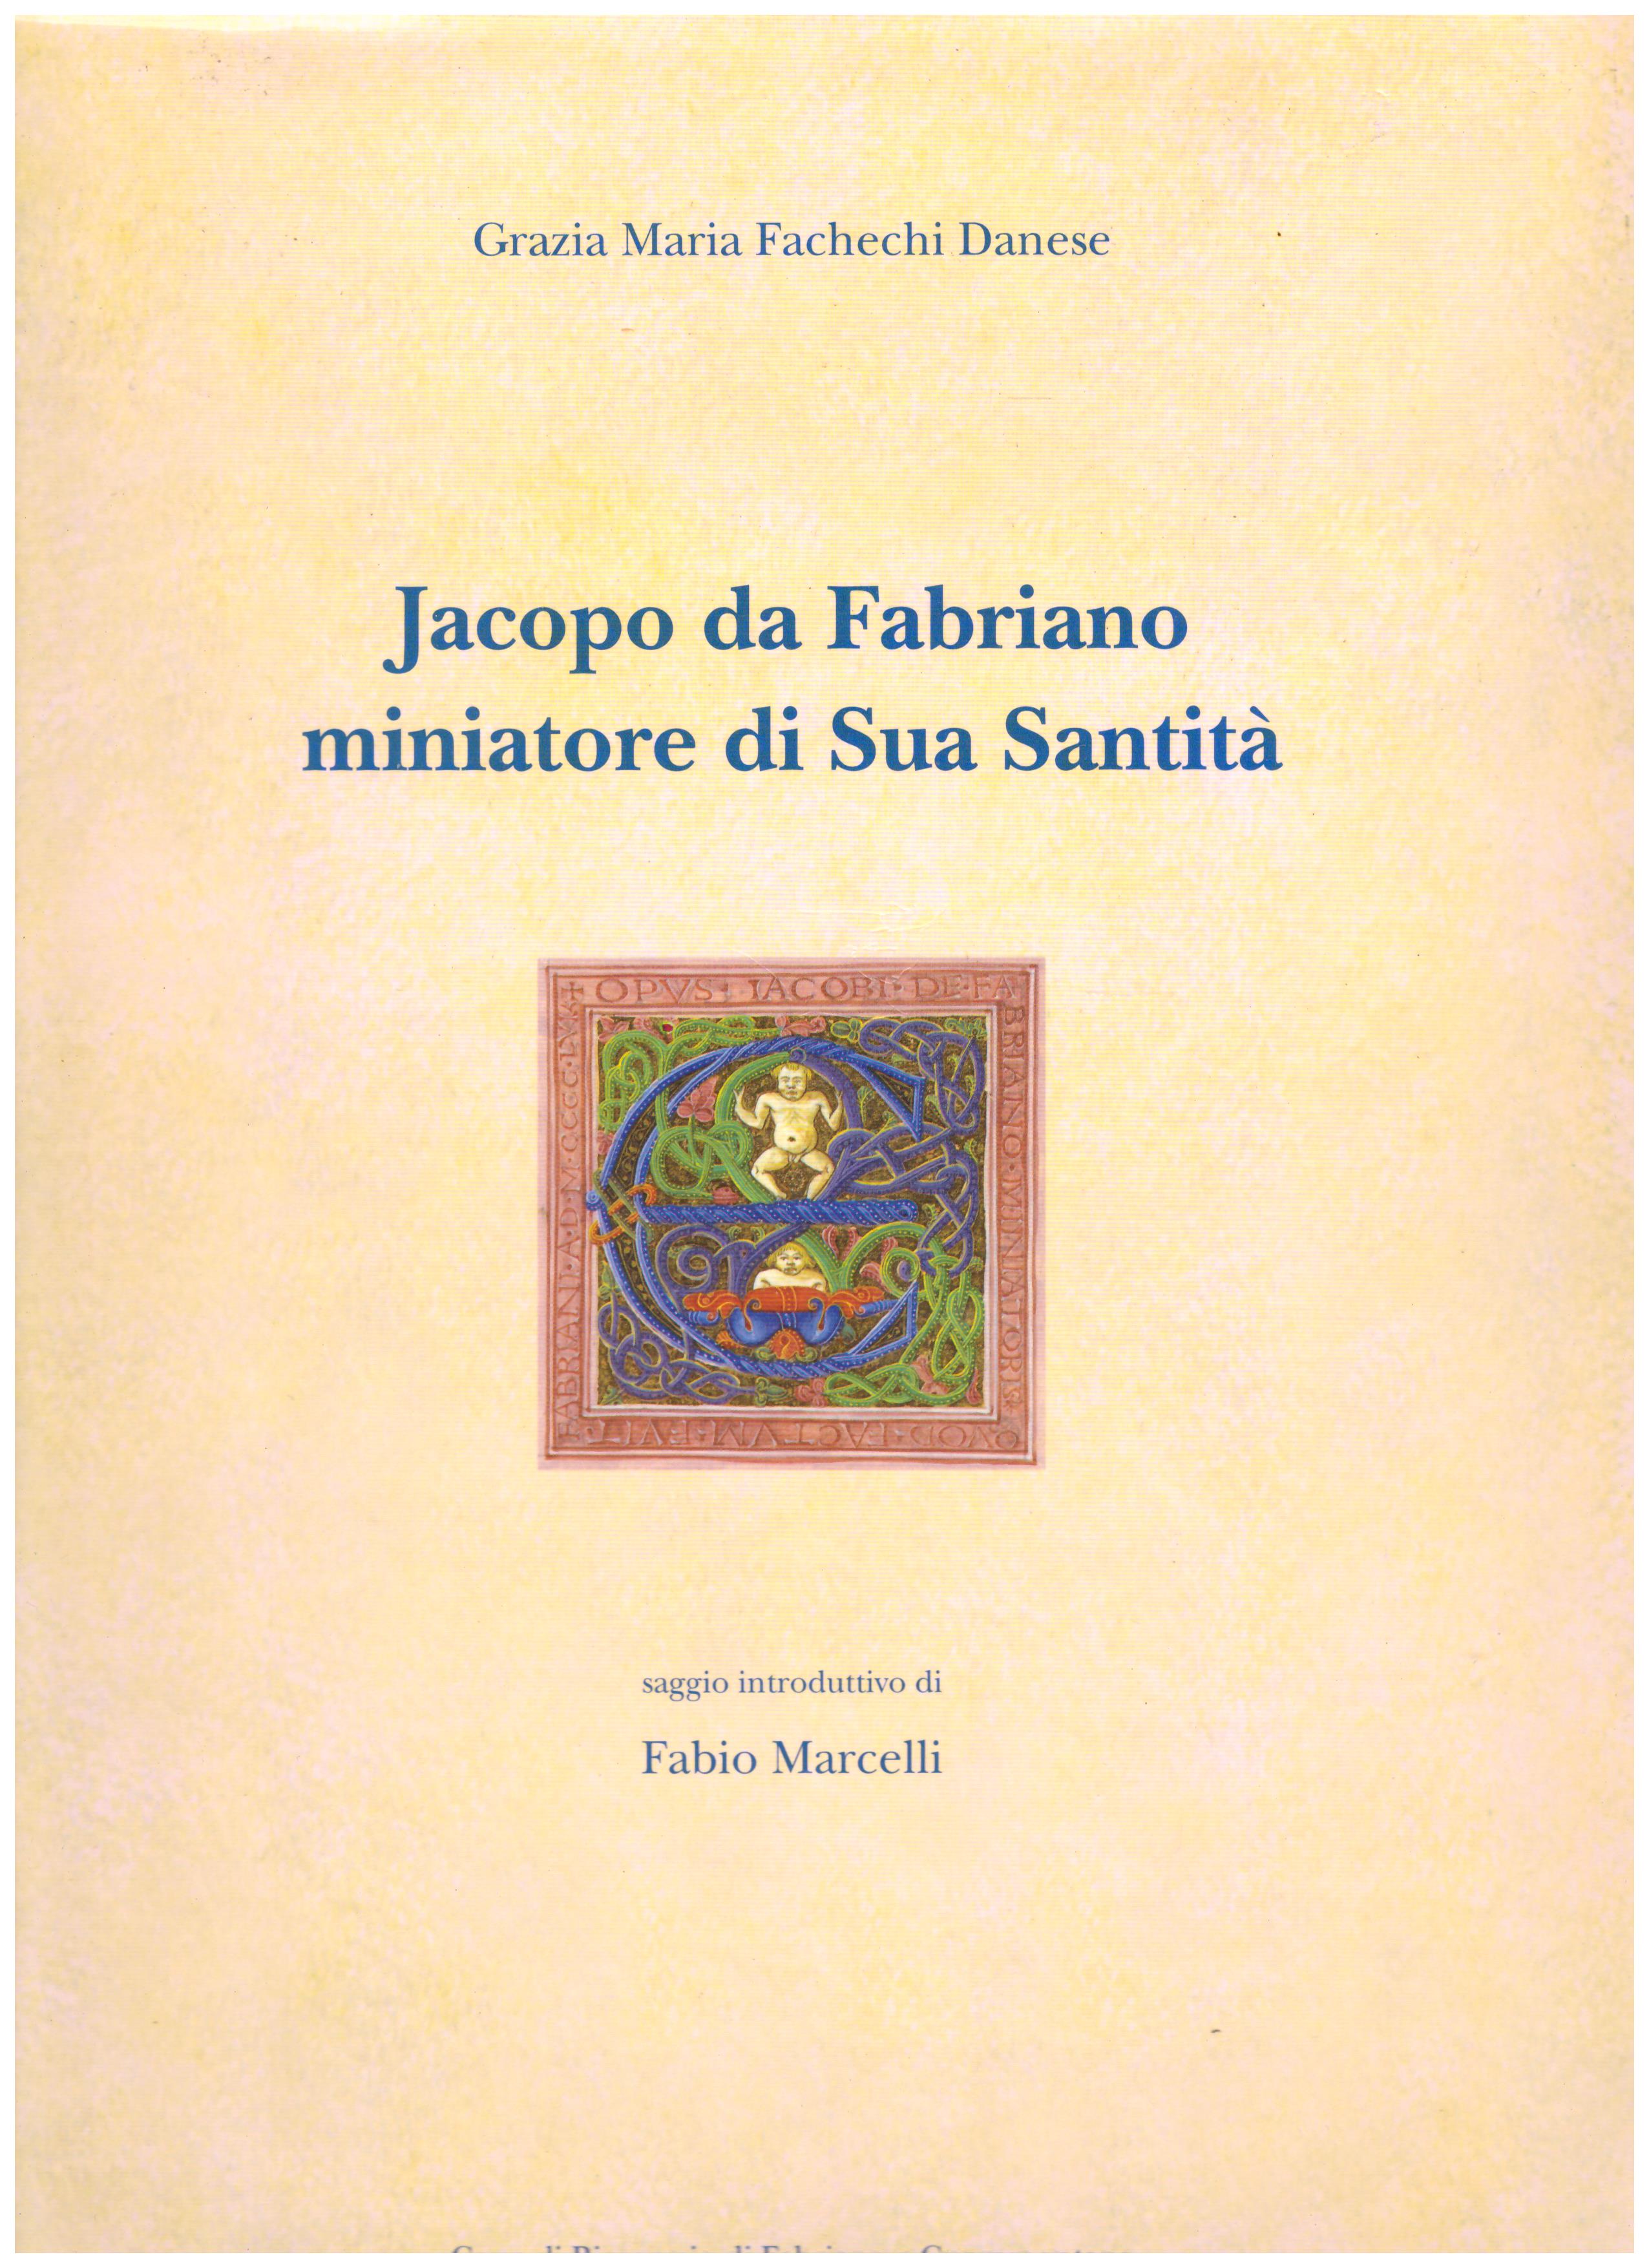 Titolo: Jacopo da Fabriano miniatore di Sua Santità.  autore: AA.VV.  editore: cassa di risparmio di Fabriano e Cupramontana